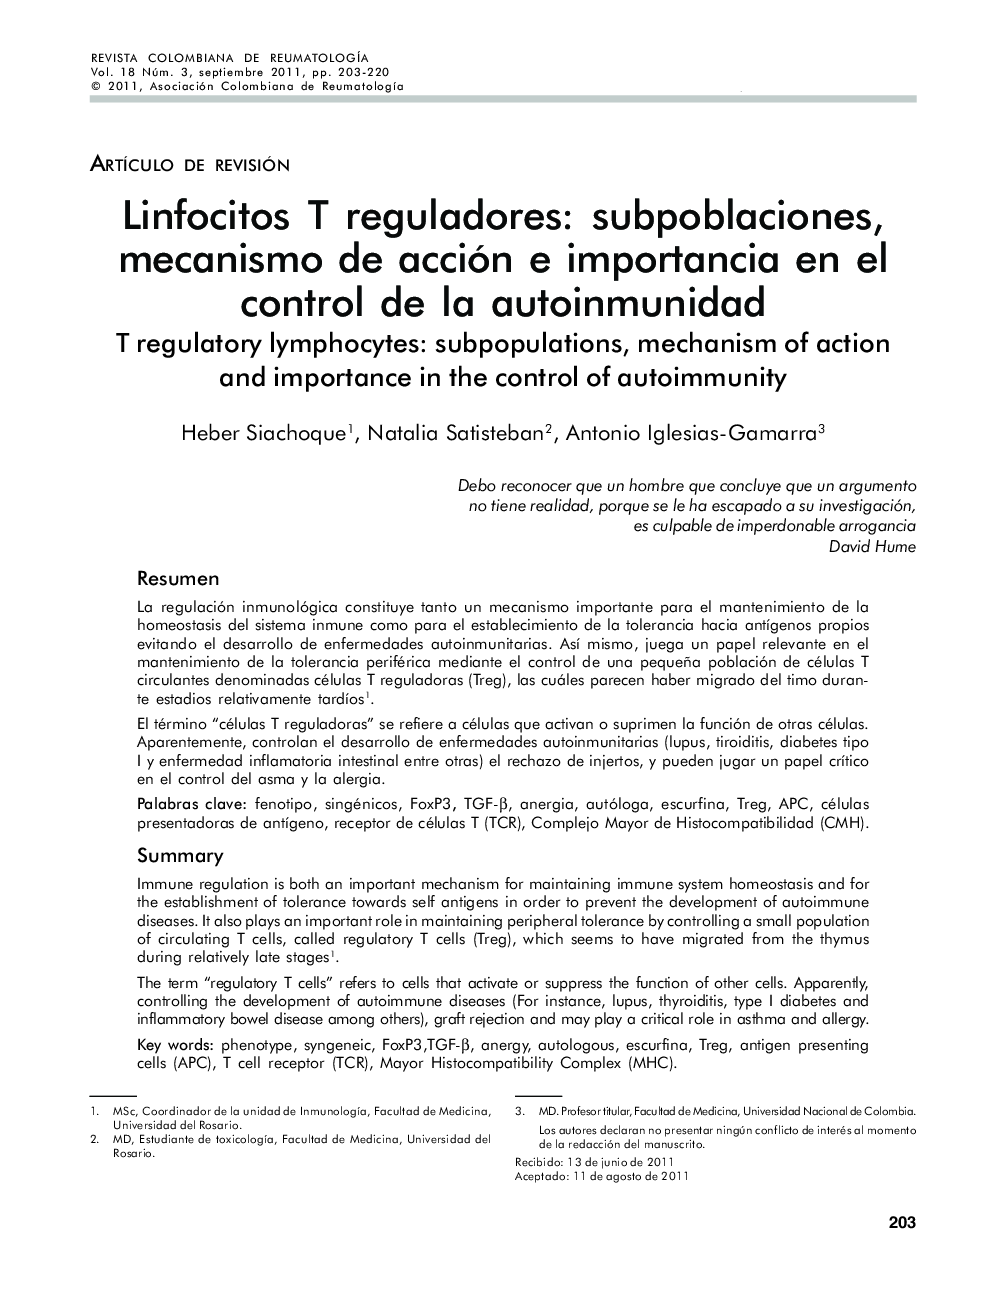 Linfocitos T reguladores: Subpoblaciones, mecanismo de acción e importancia en el control de la autoinmunidad